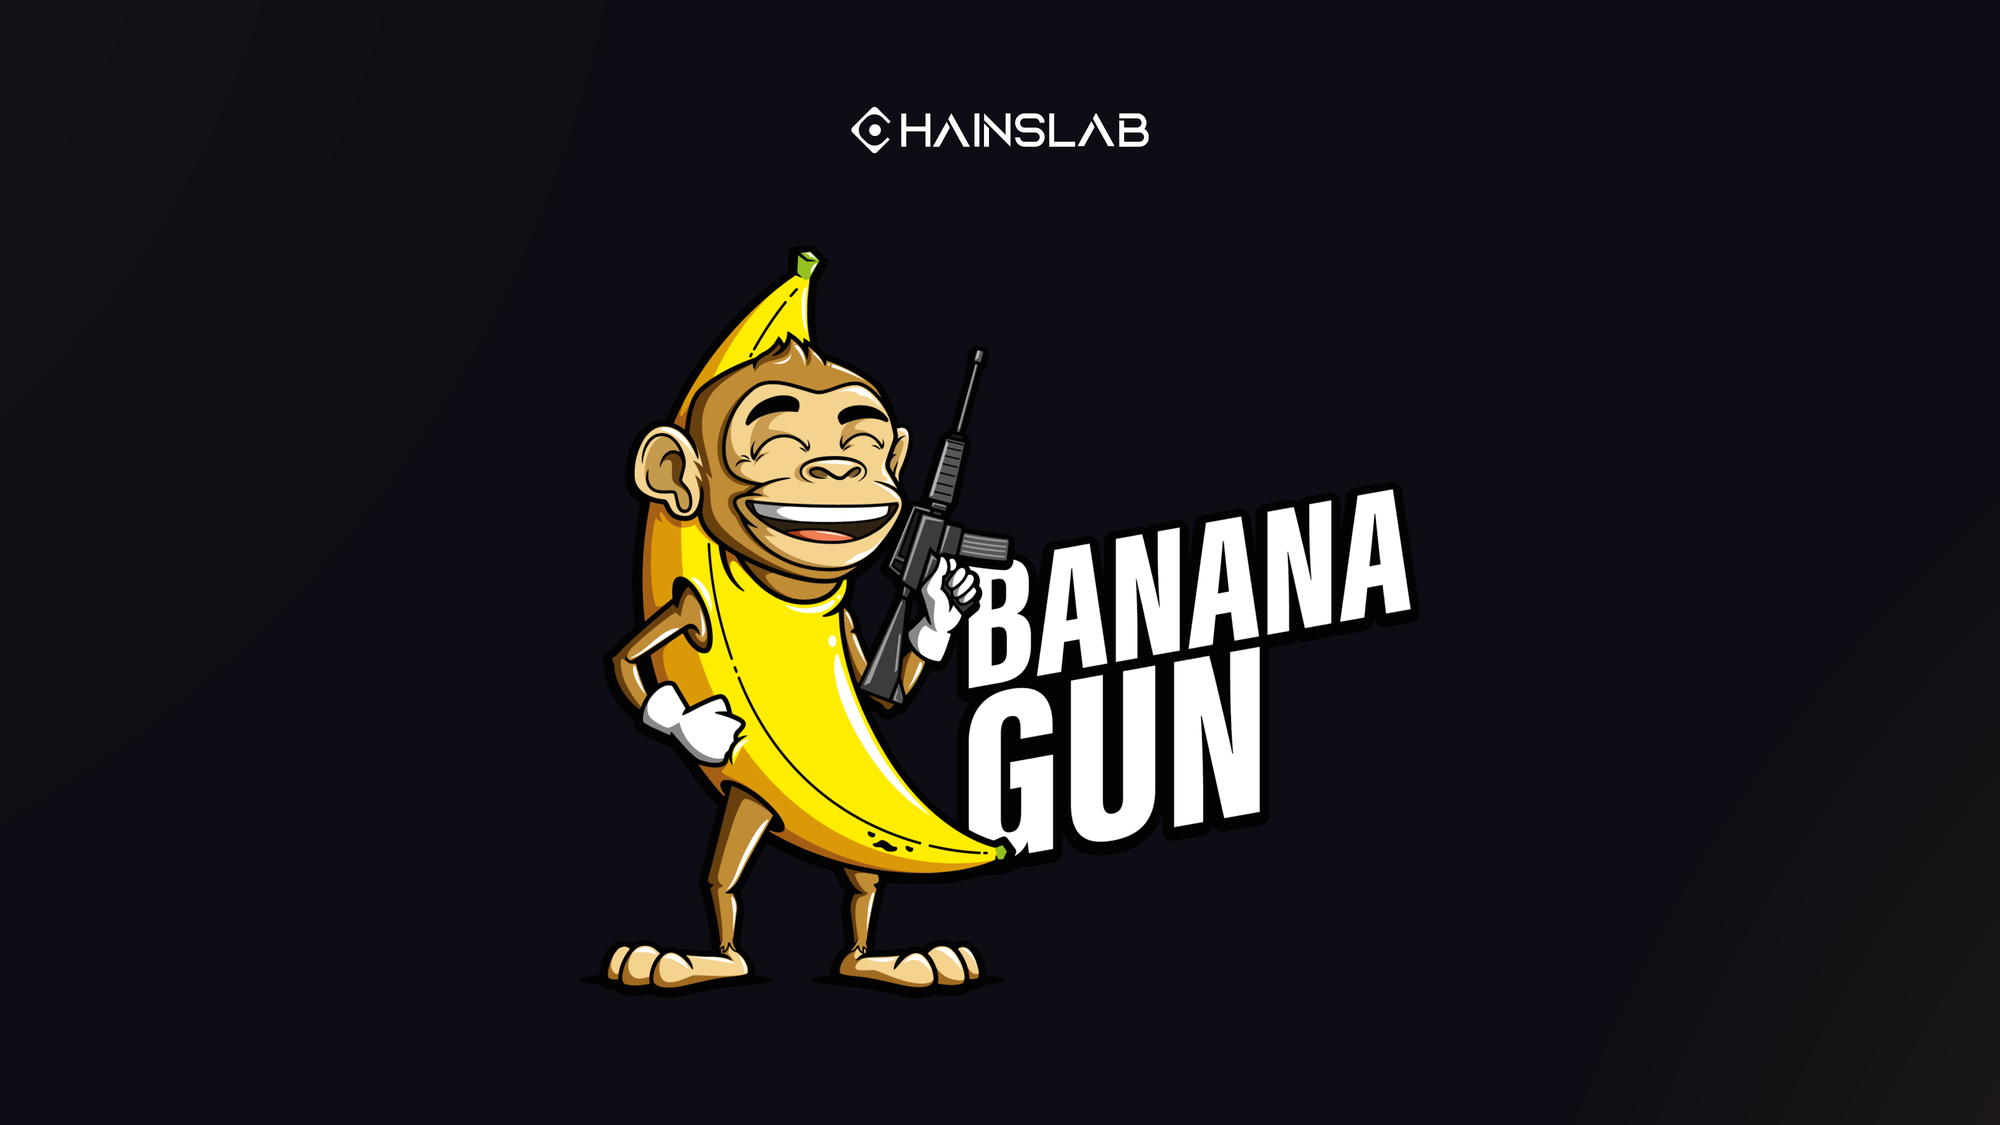 Banana Gun Bot - Bringing Banana to a Gunfight